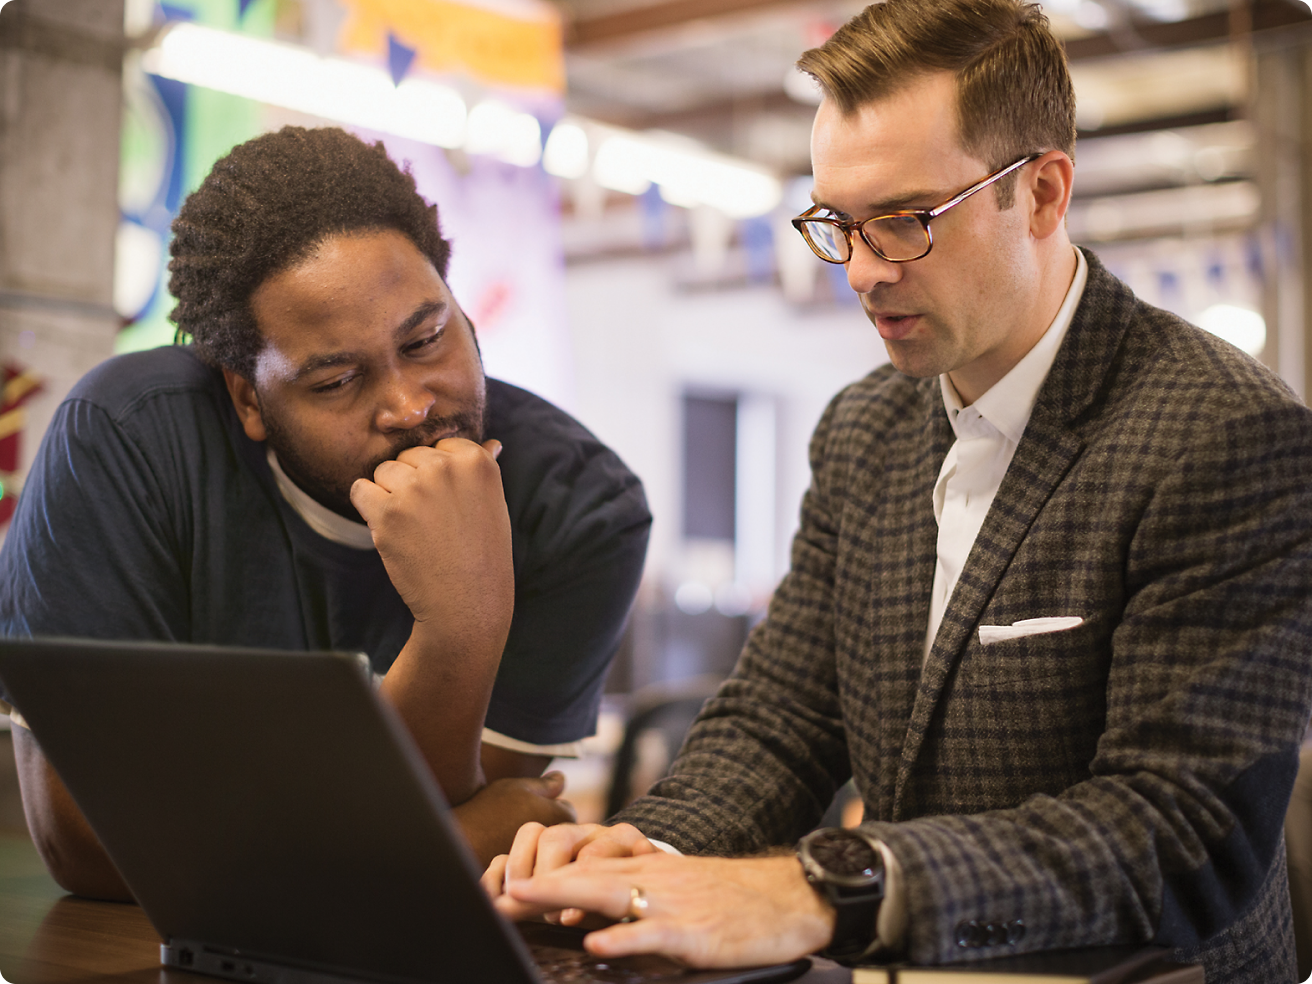 Twee mannen, één met een bril, beoordelen samen inhoud op een laptop in een kantooromgeving.